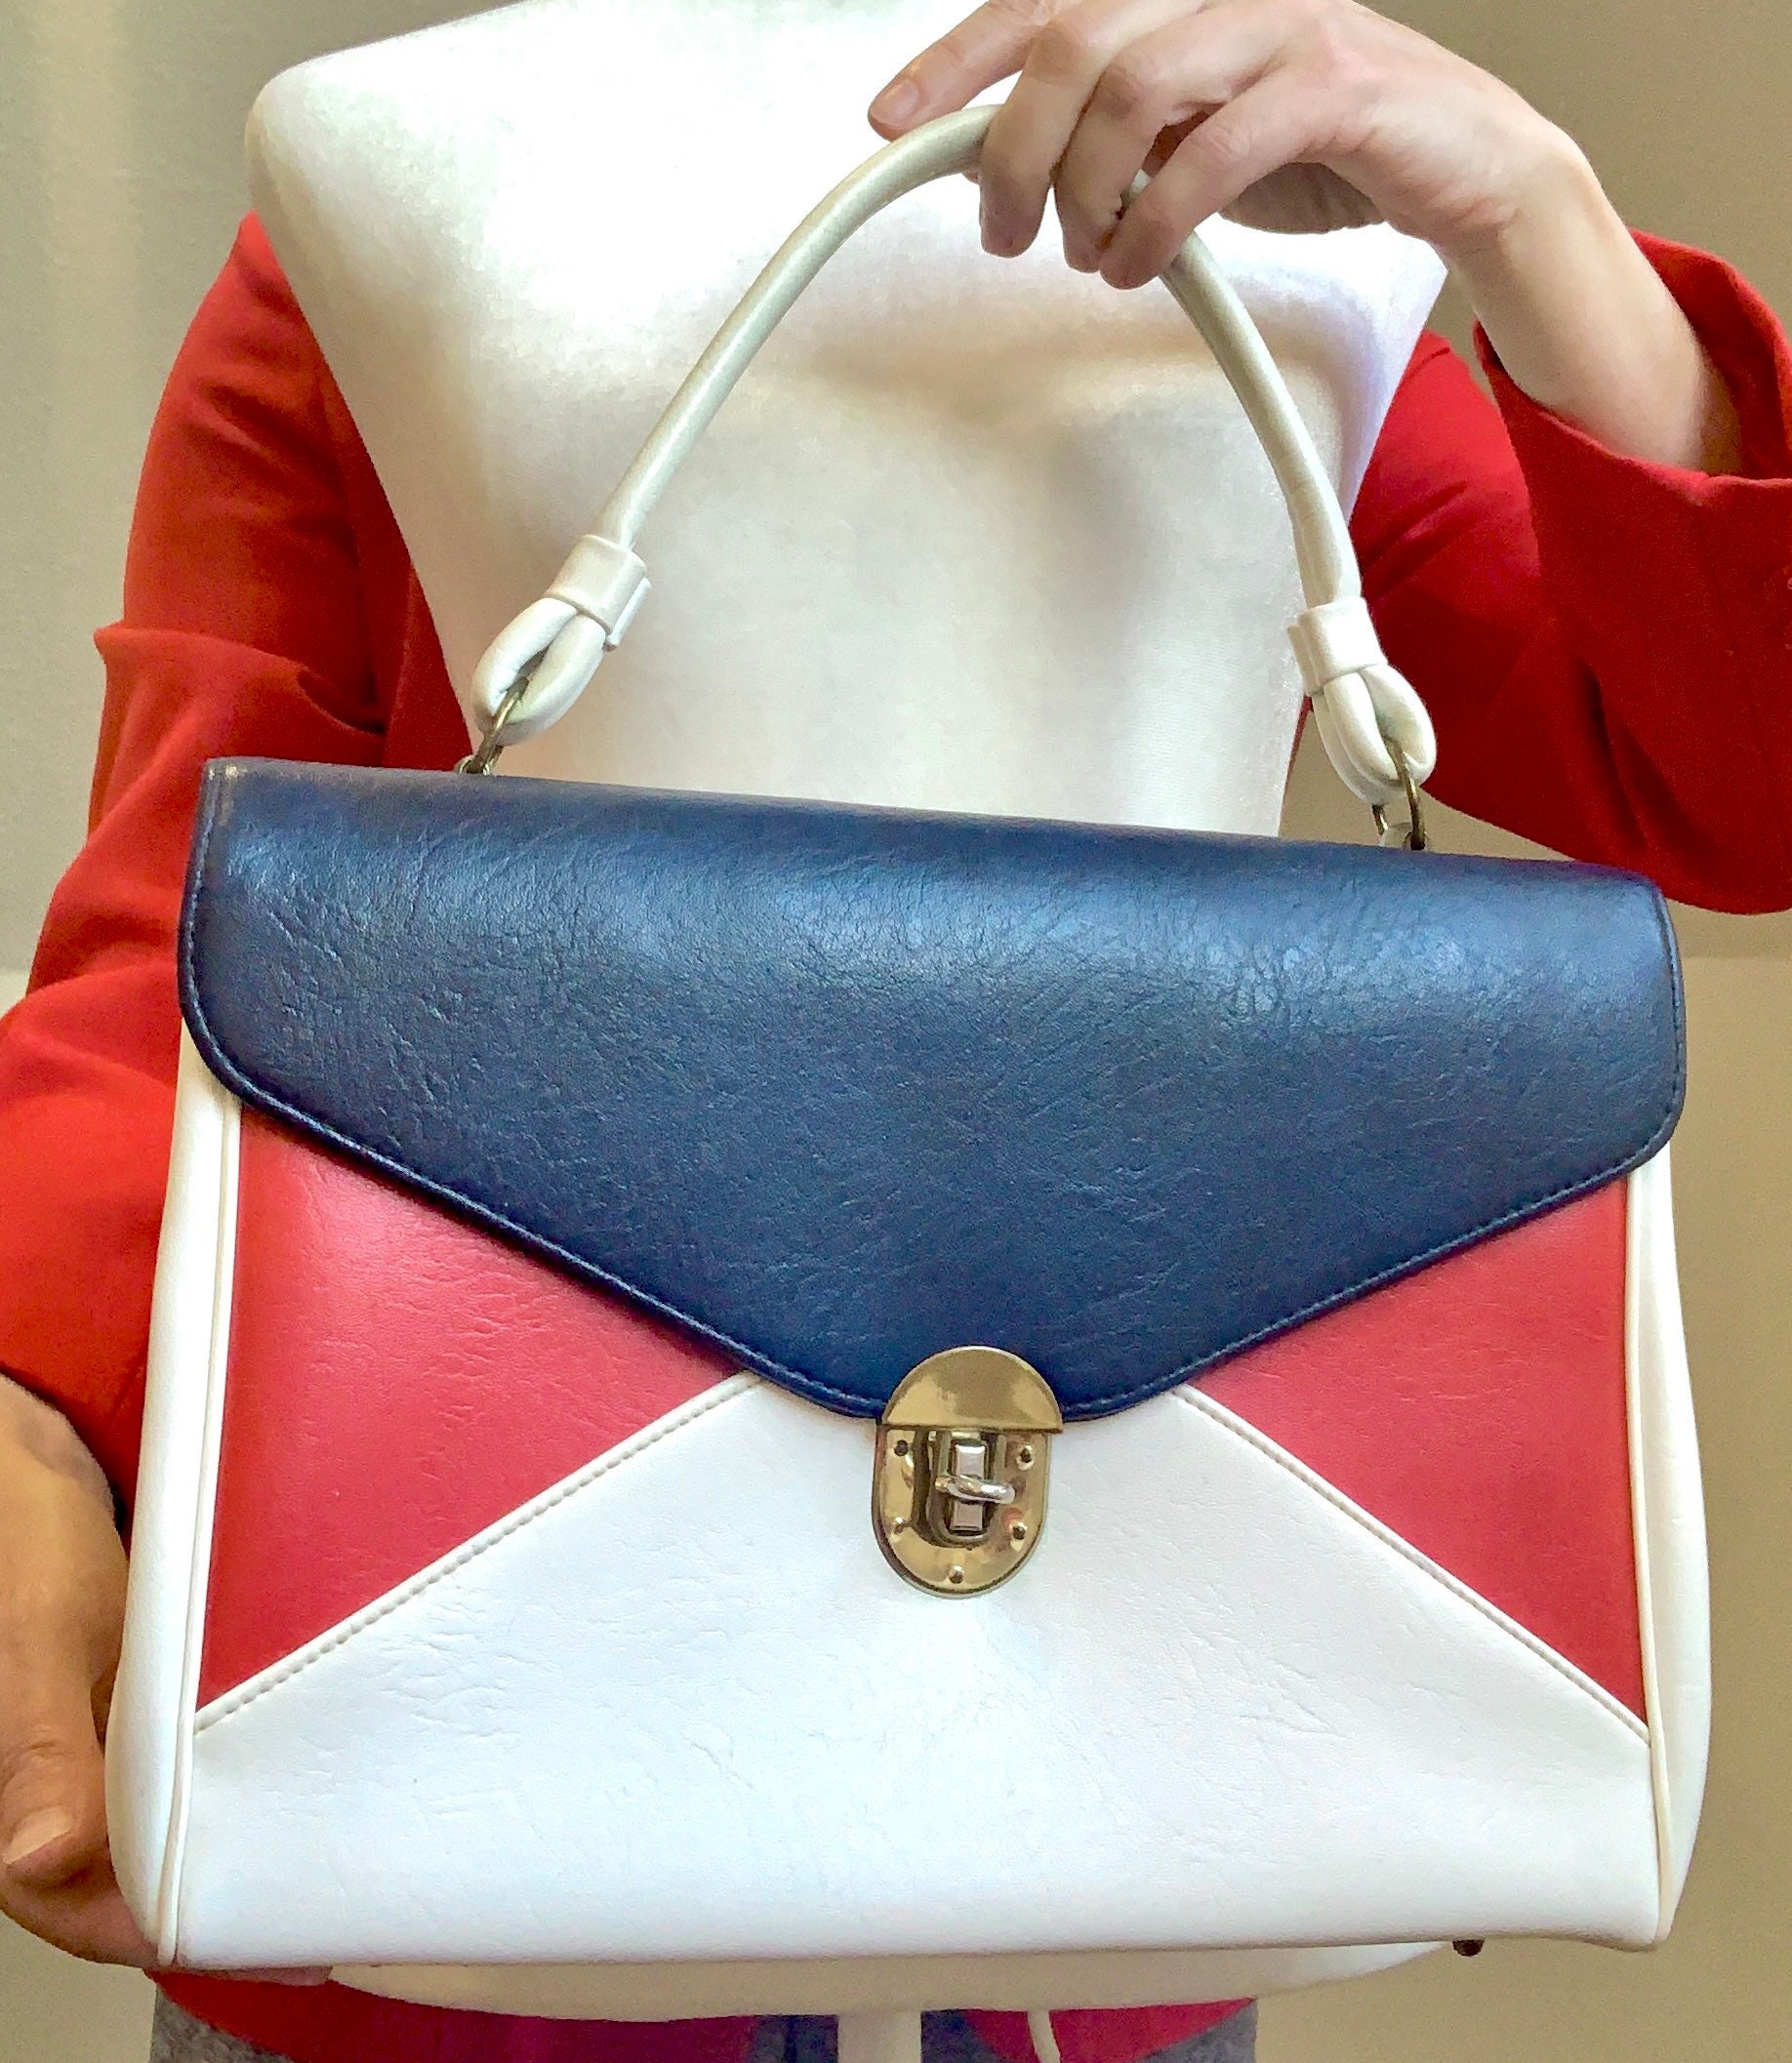 1960's Louis Vuitton Handbag $325.00 Rare